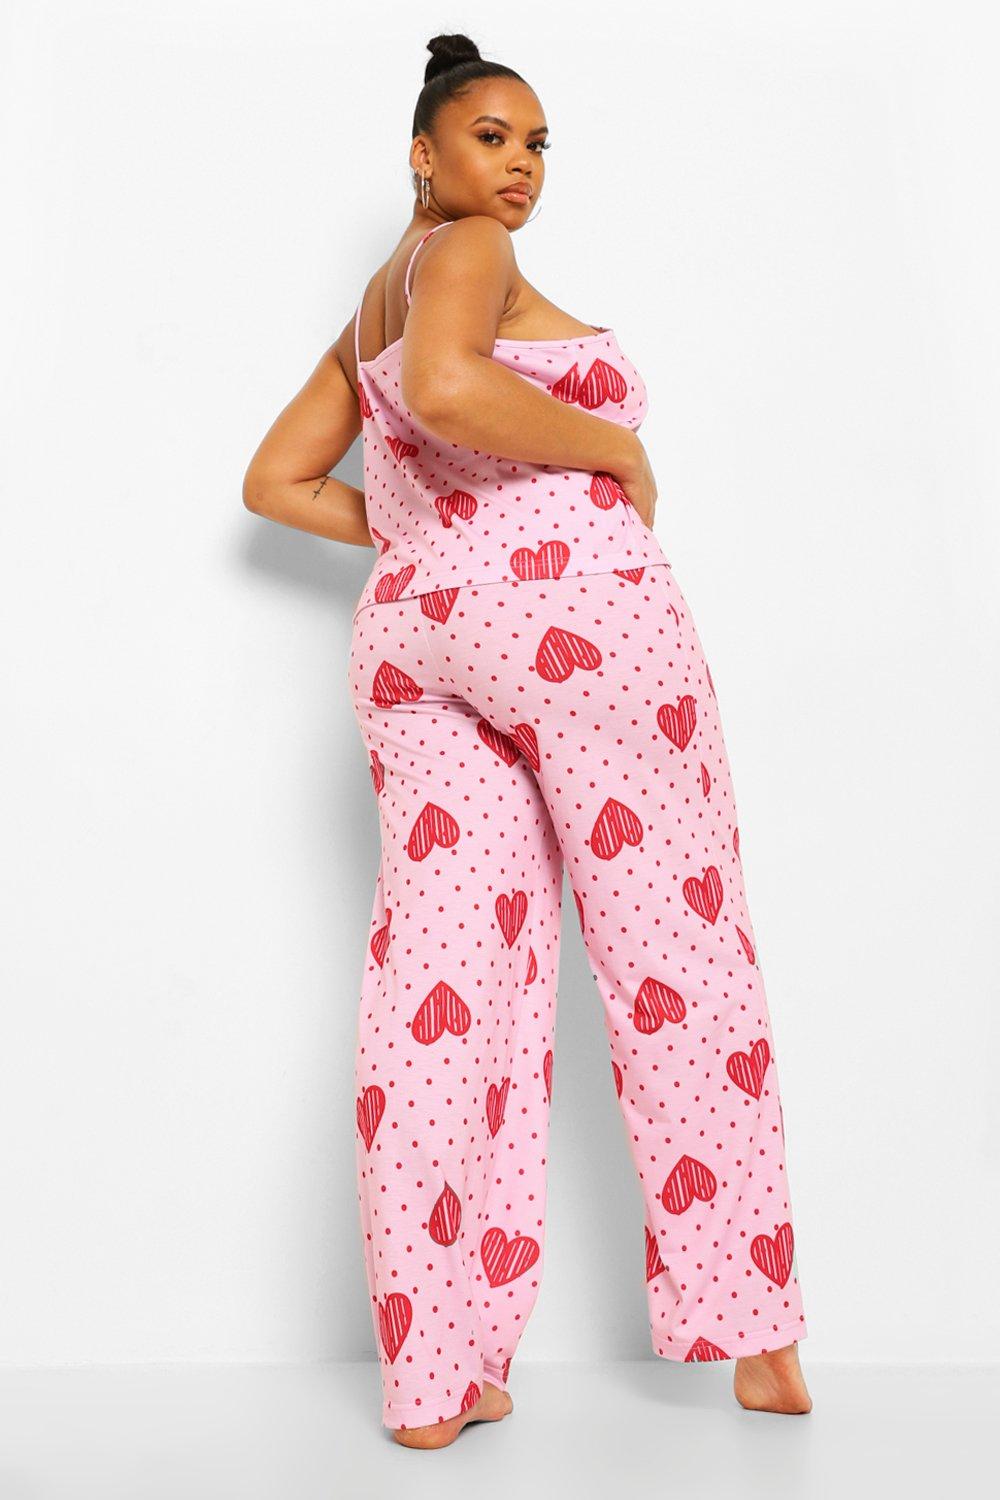 Women's 2 Piece Pajamas Set Heart Print Lace Cami Shorts Suit PJs